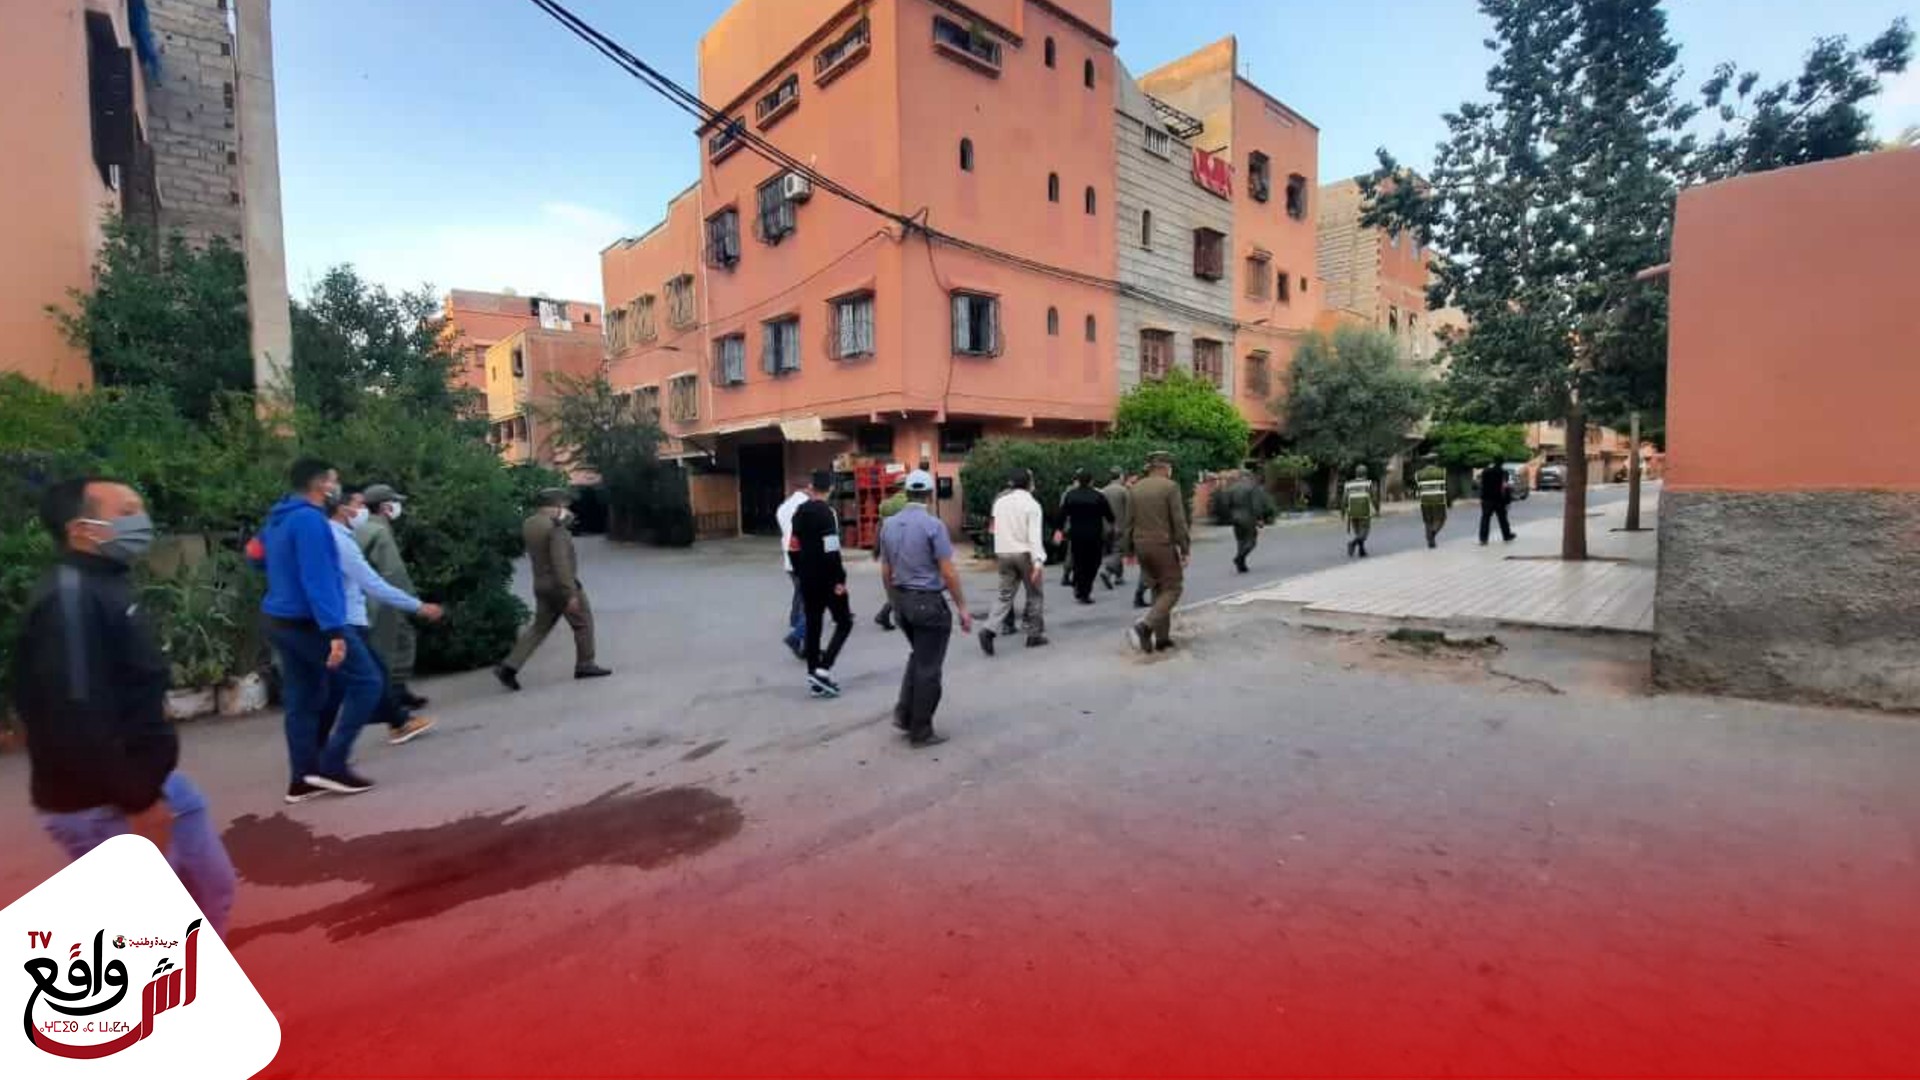 السلطات المغربية تفرض الحجر الصحي لمدة 15 يوما بهده المدينة